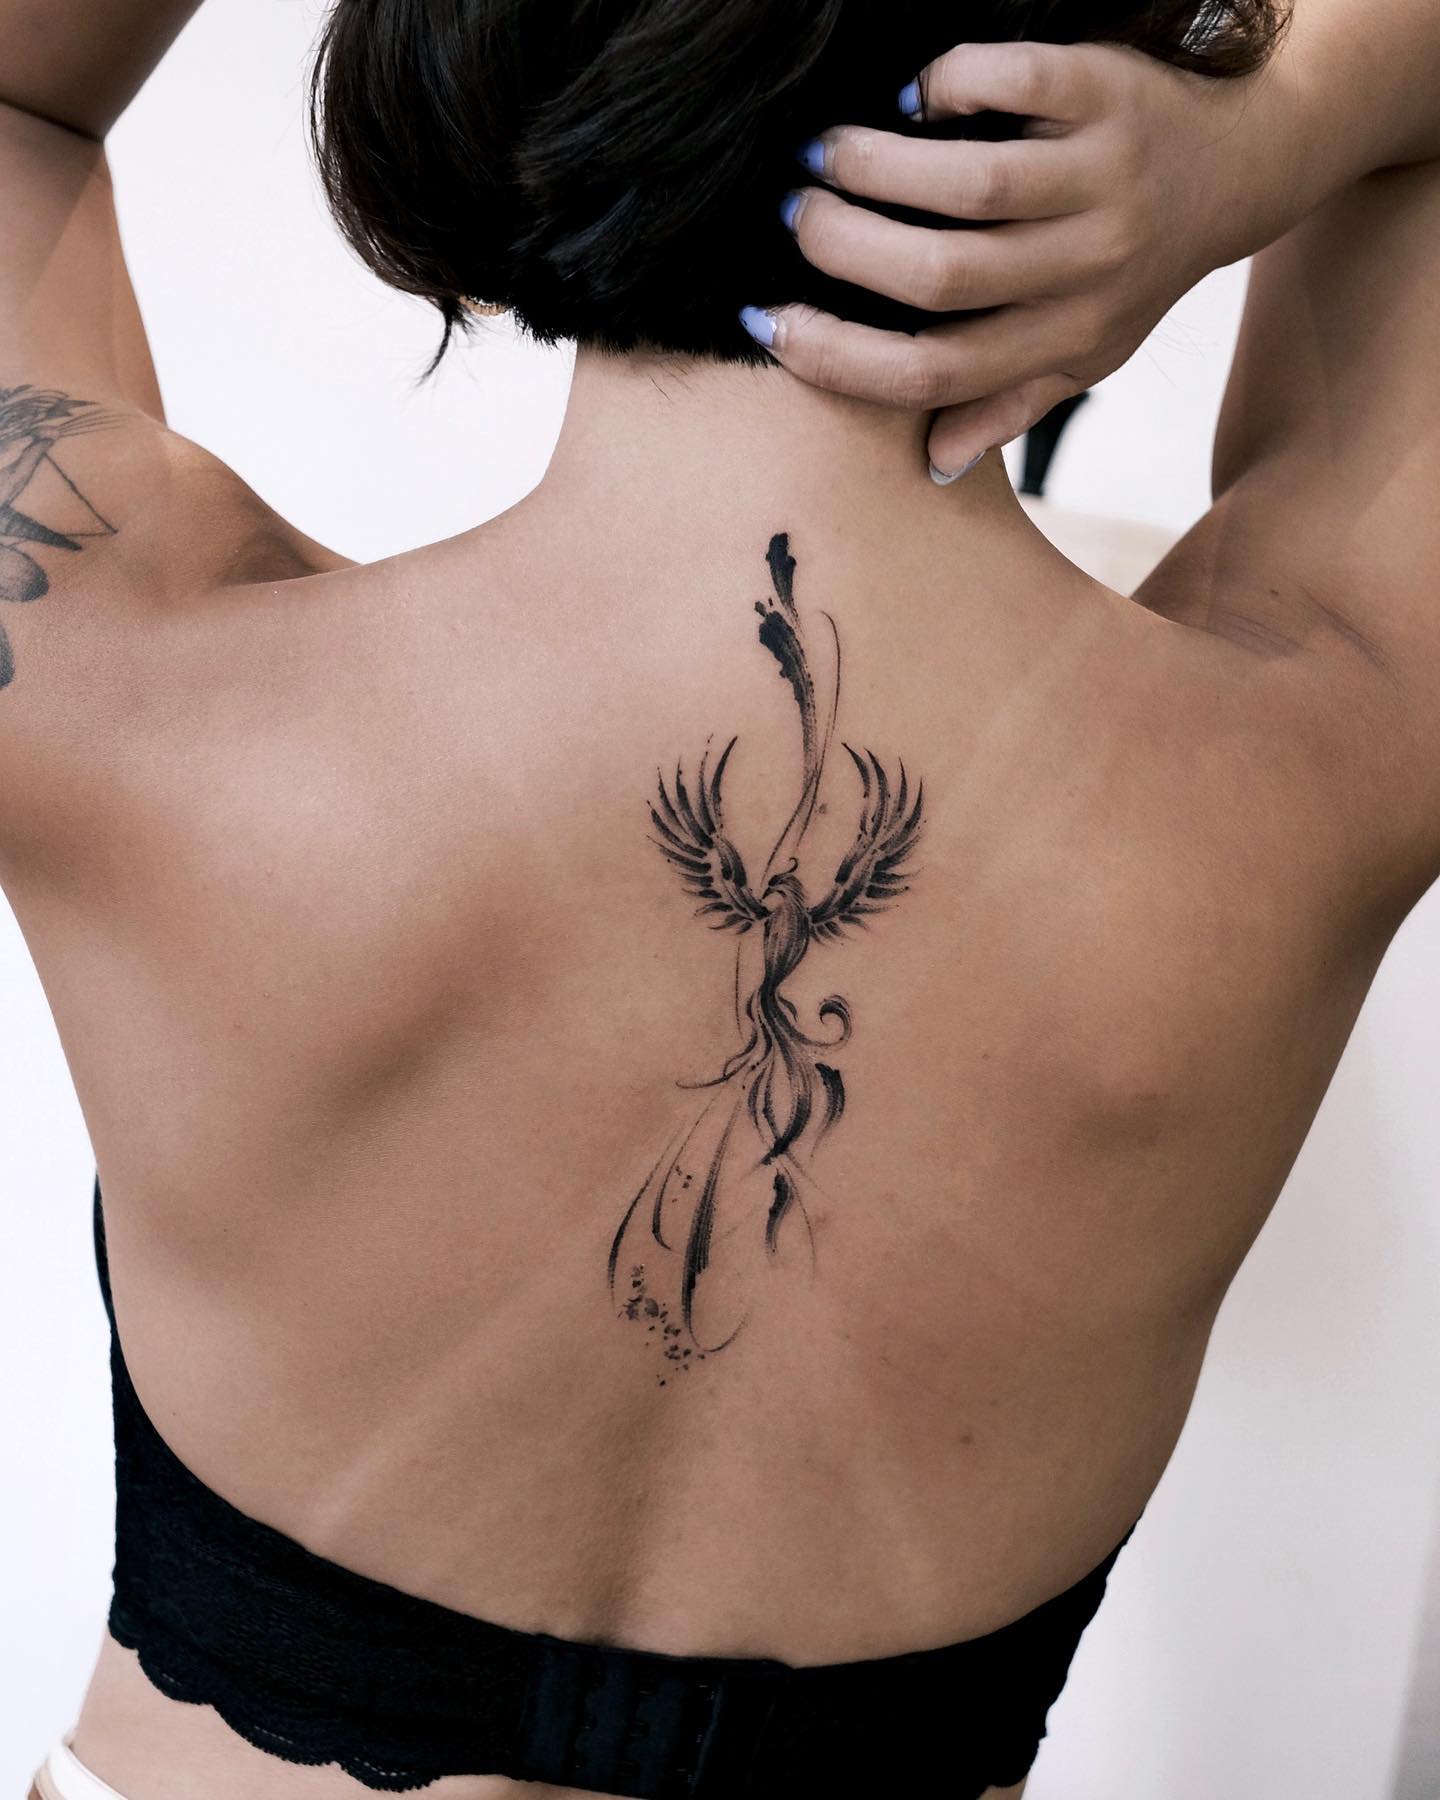 Back Tattoos | Small tattoos, Tattoos for women, Tattoos